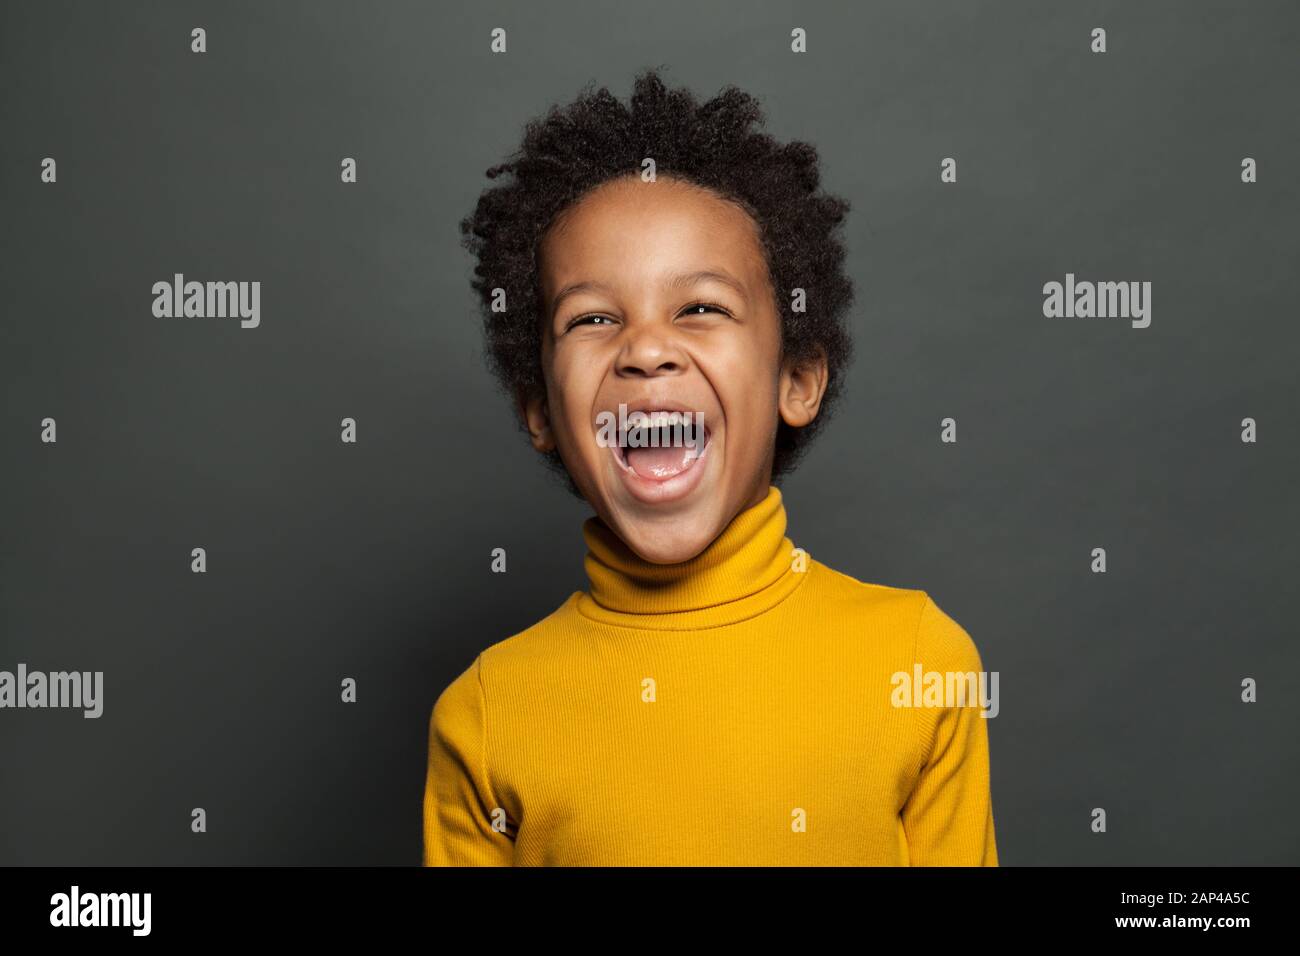 Lachendes Kind auf grauem Hintergrund Stockfoto